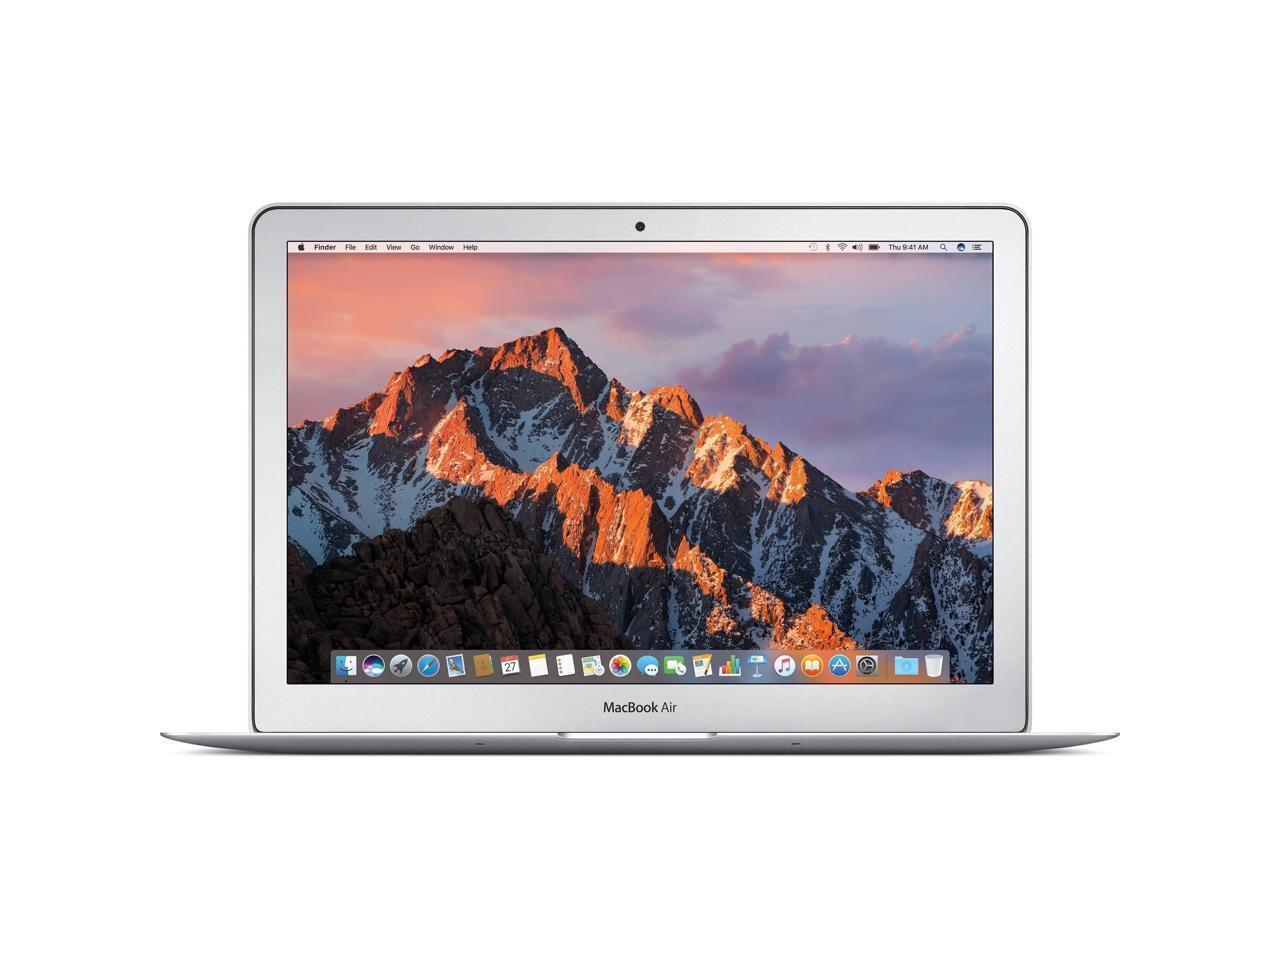 Apple MacBook Air 13'' Core i5 1.8GHz 8GB 256GB SSD A1466 MQD32LL/A 2017